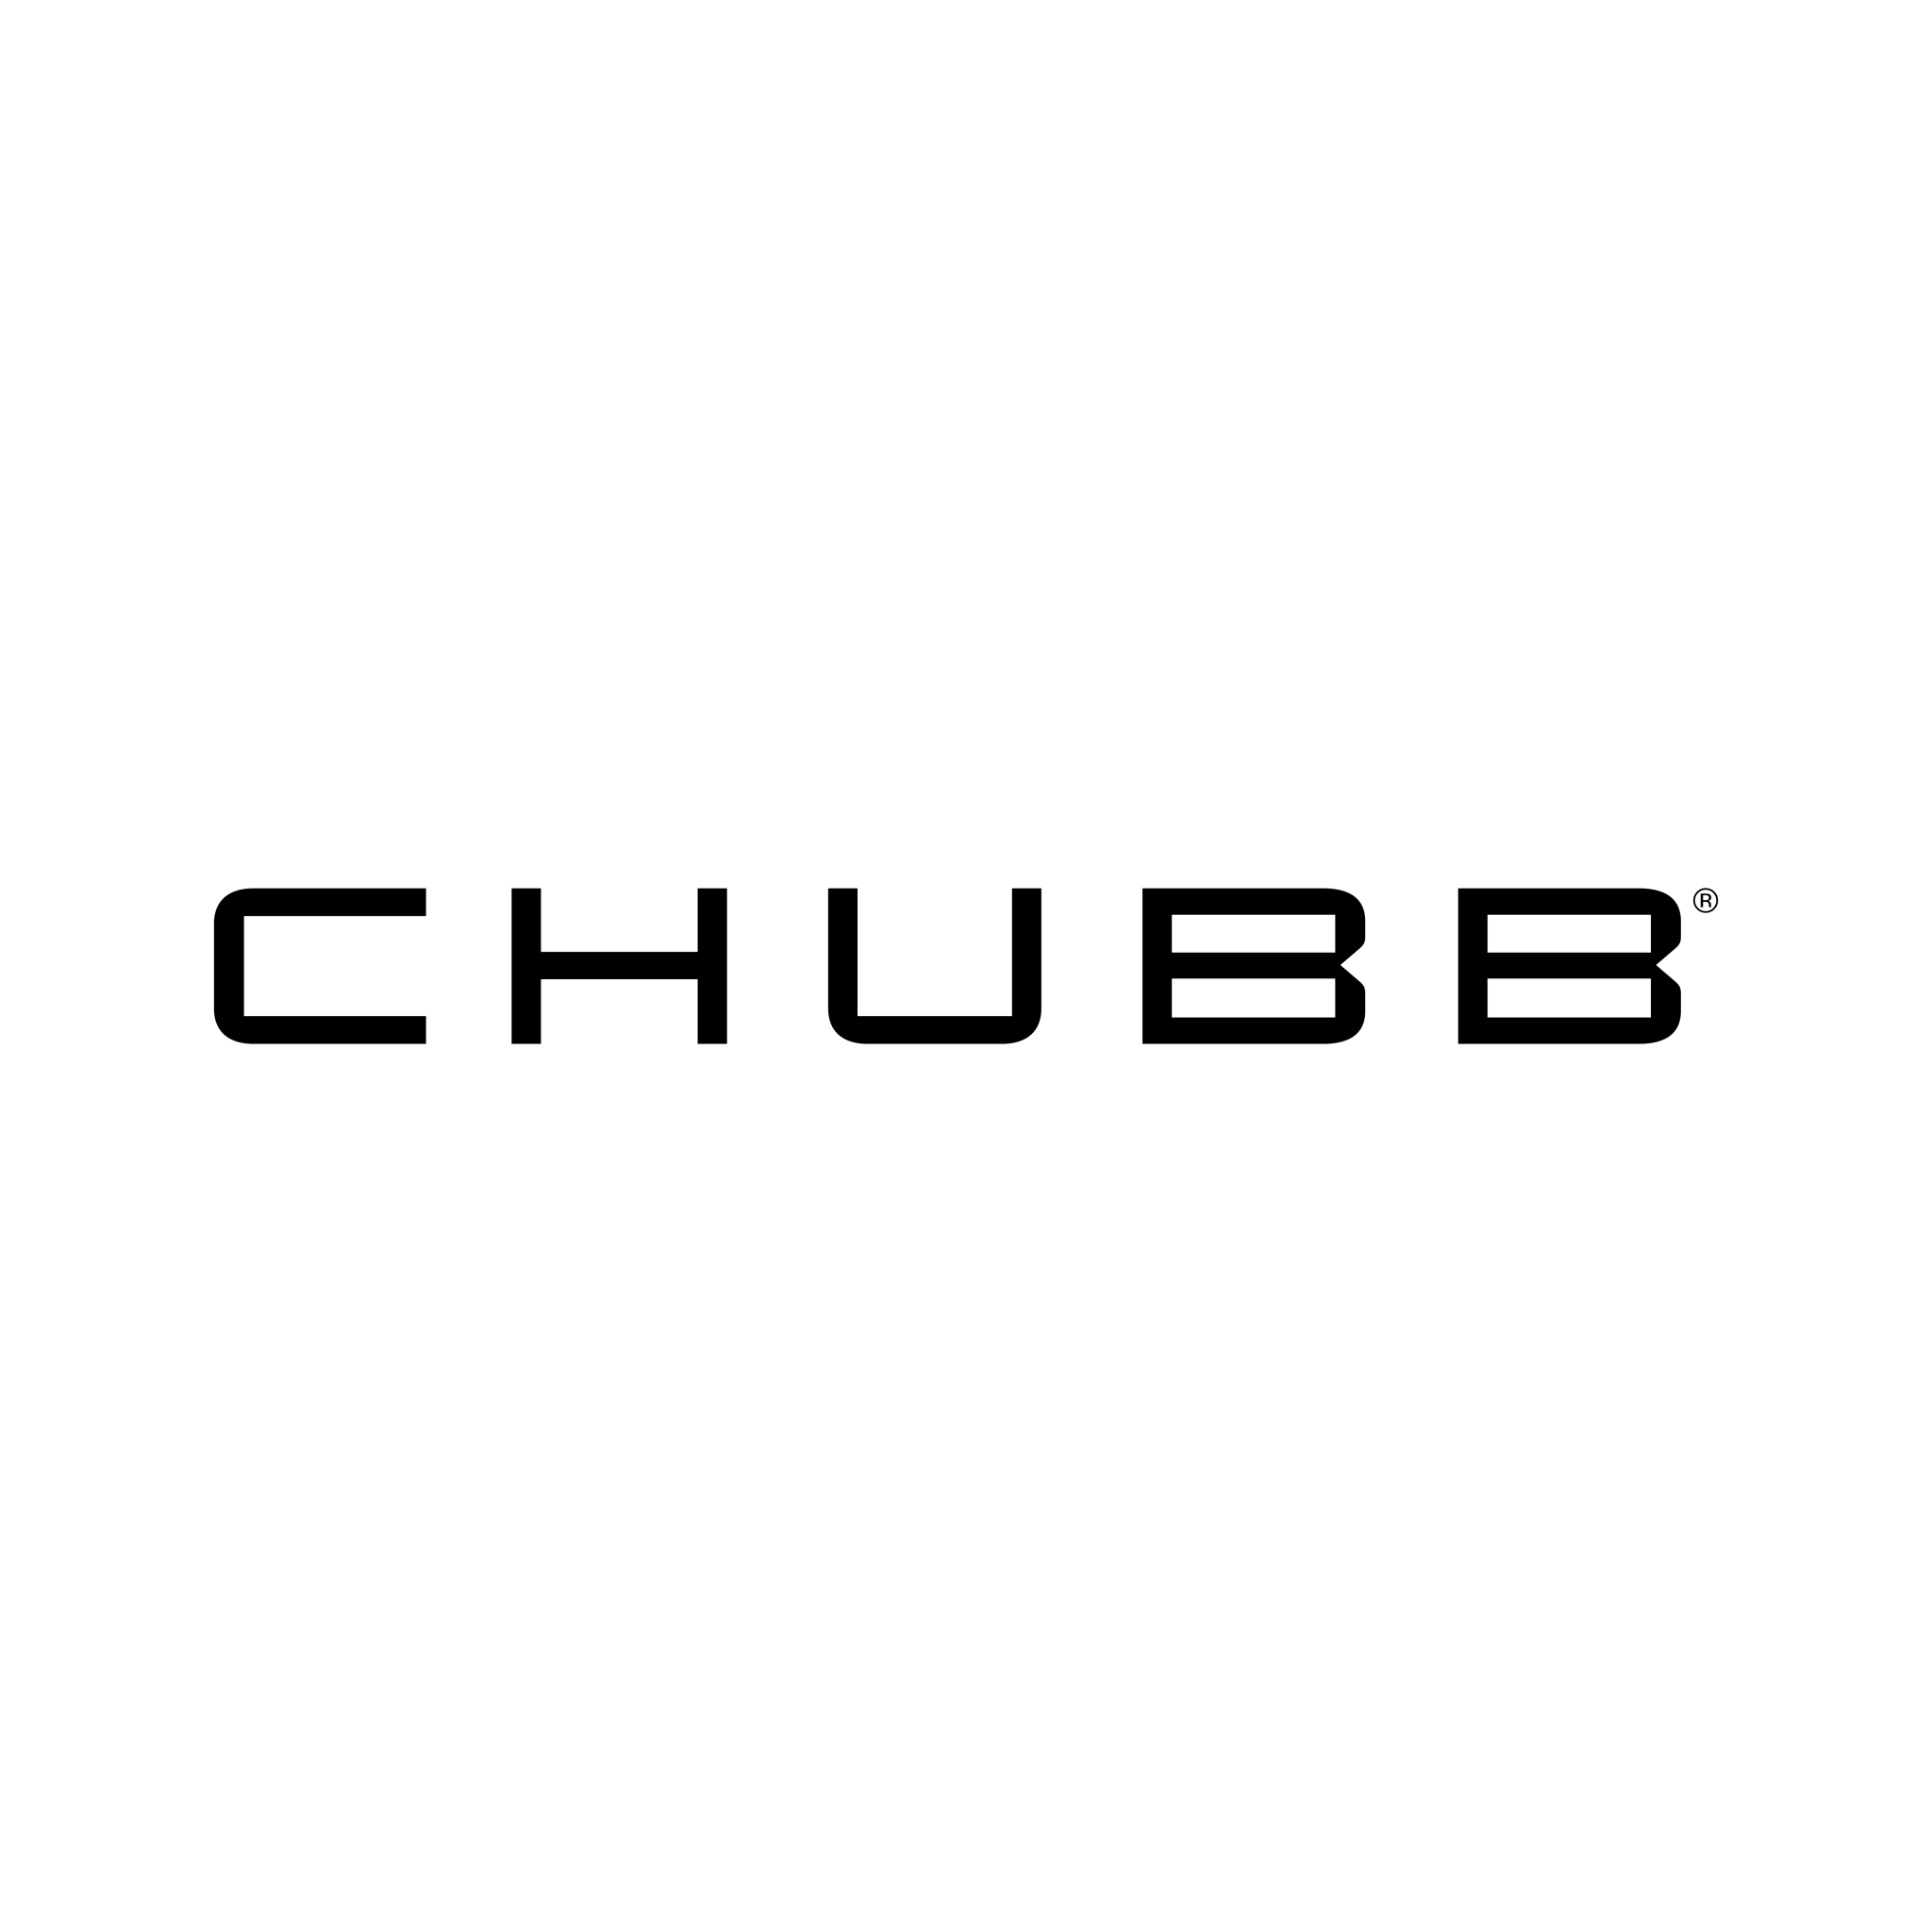 Logo de Chubb SVG